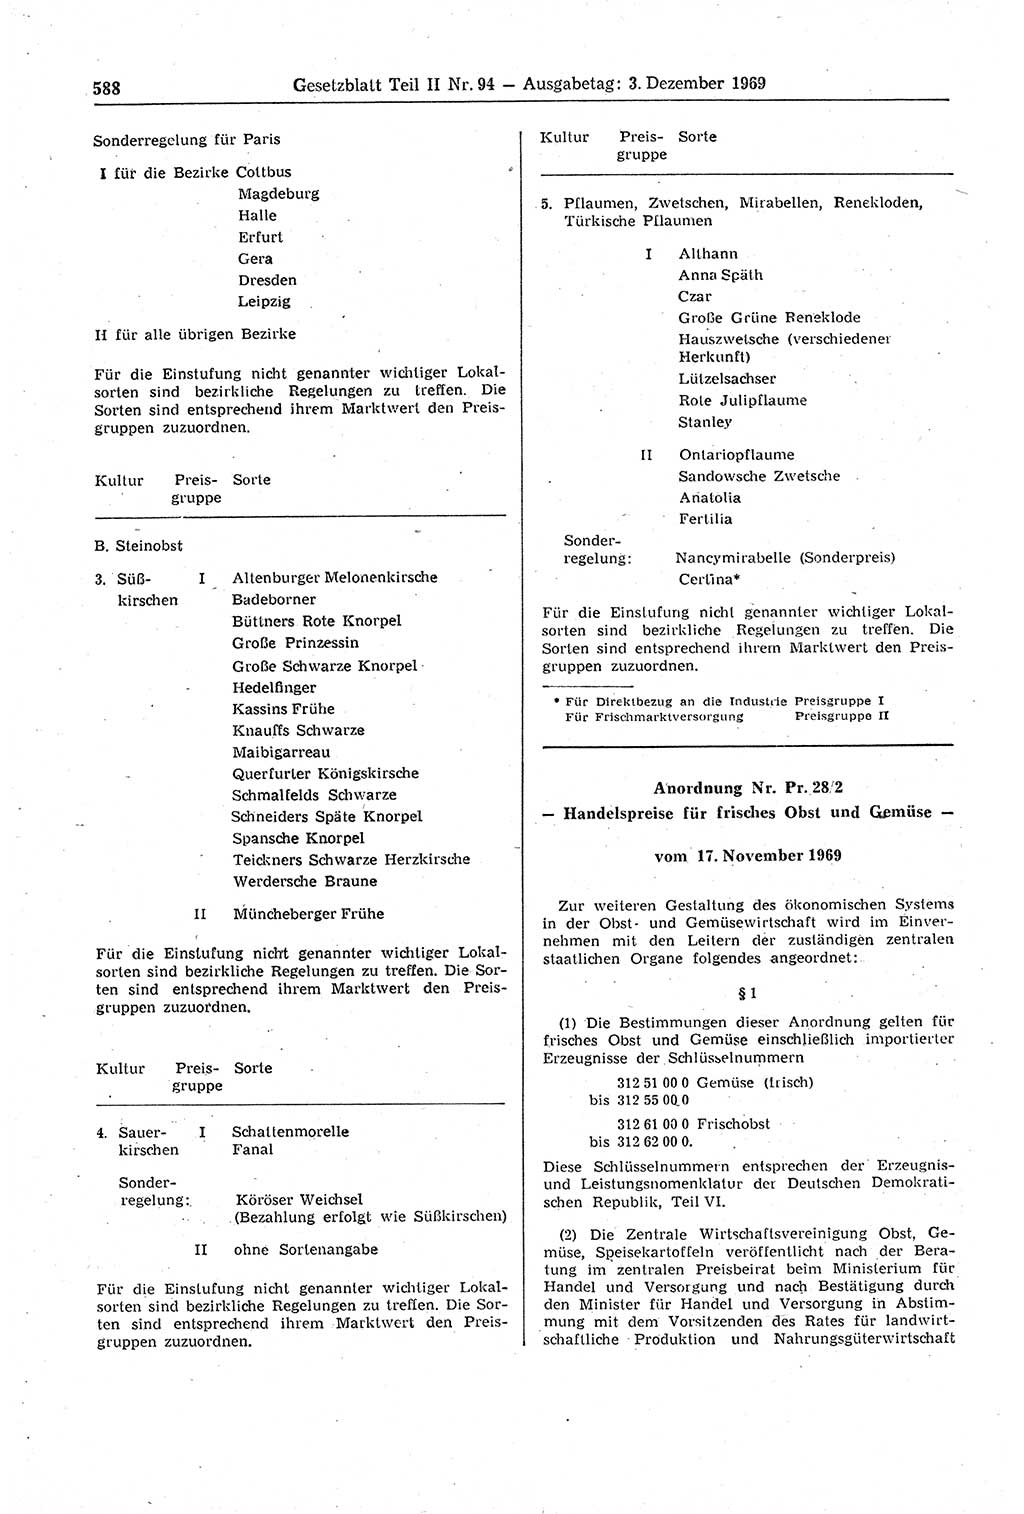 Gesetzblatt (GBl.) der Deutschen Demokratischen Republik (DDR) Teil ⅠⅠ 1969, Seite 588 (GBl. DDR ⅠⅠ 1969, S. 588)